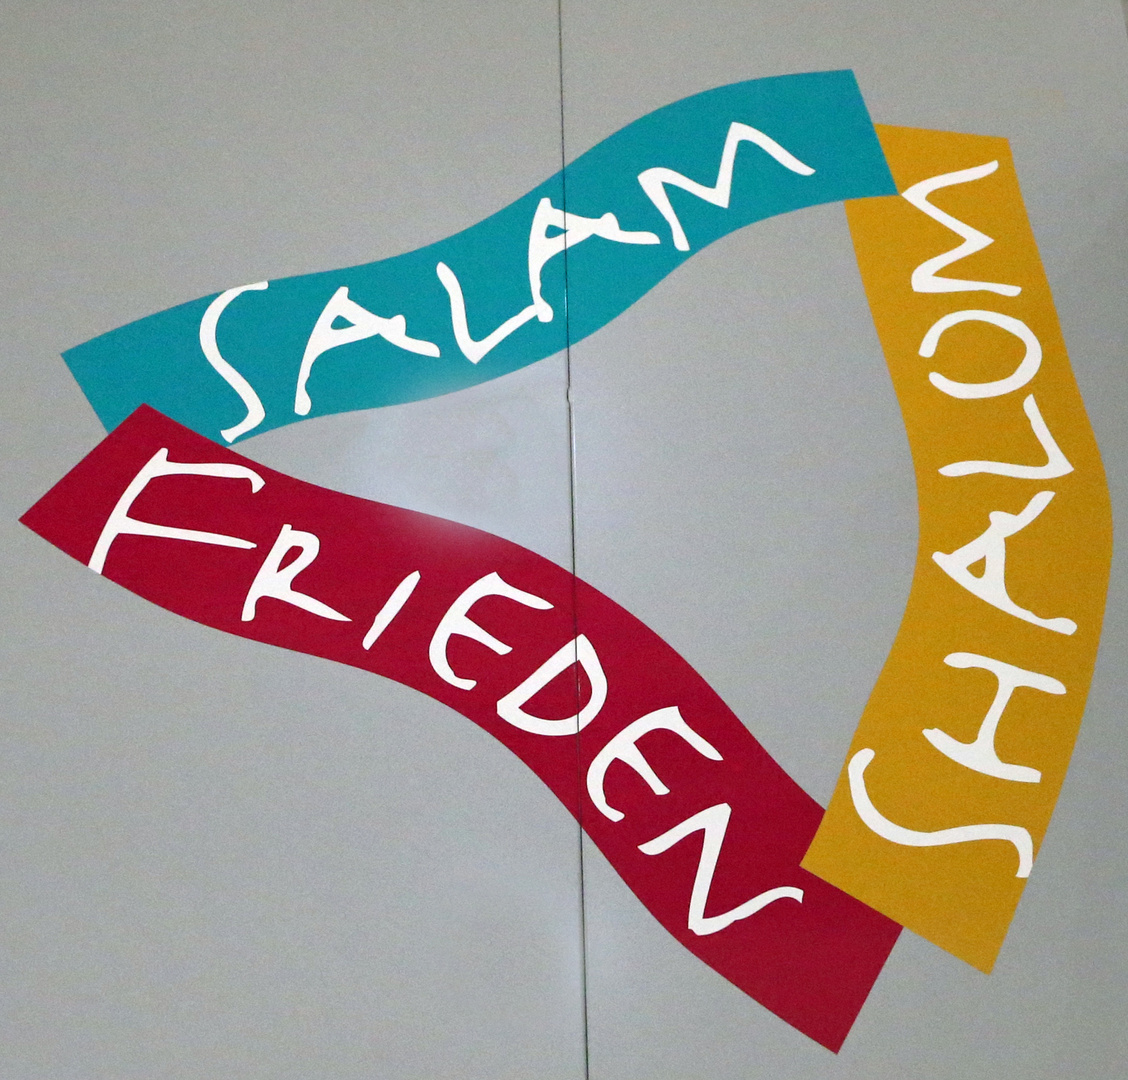 Shalom - Salam - Frieden